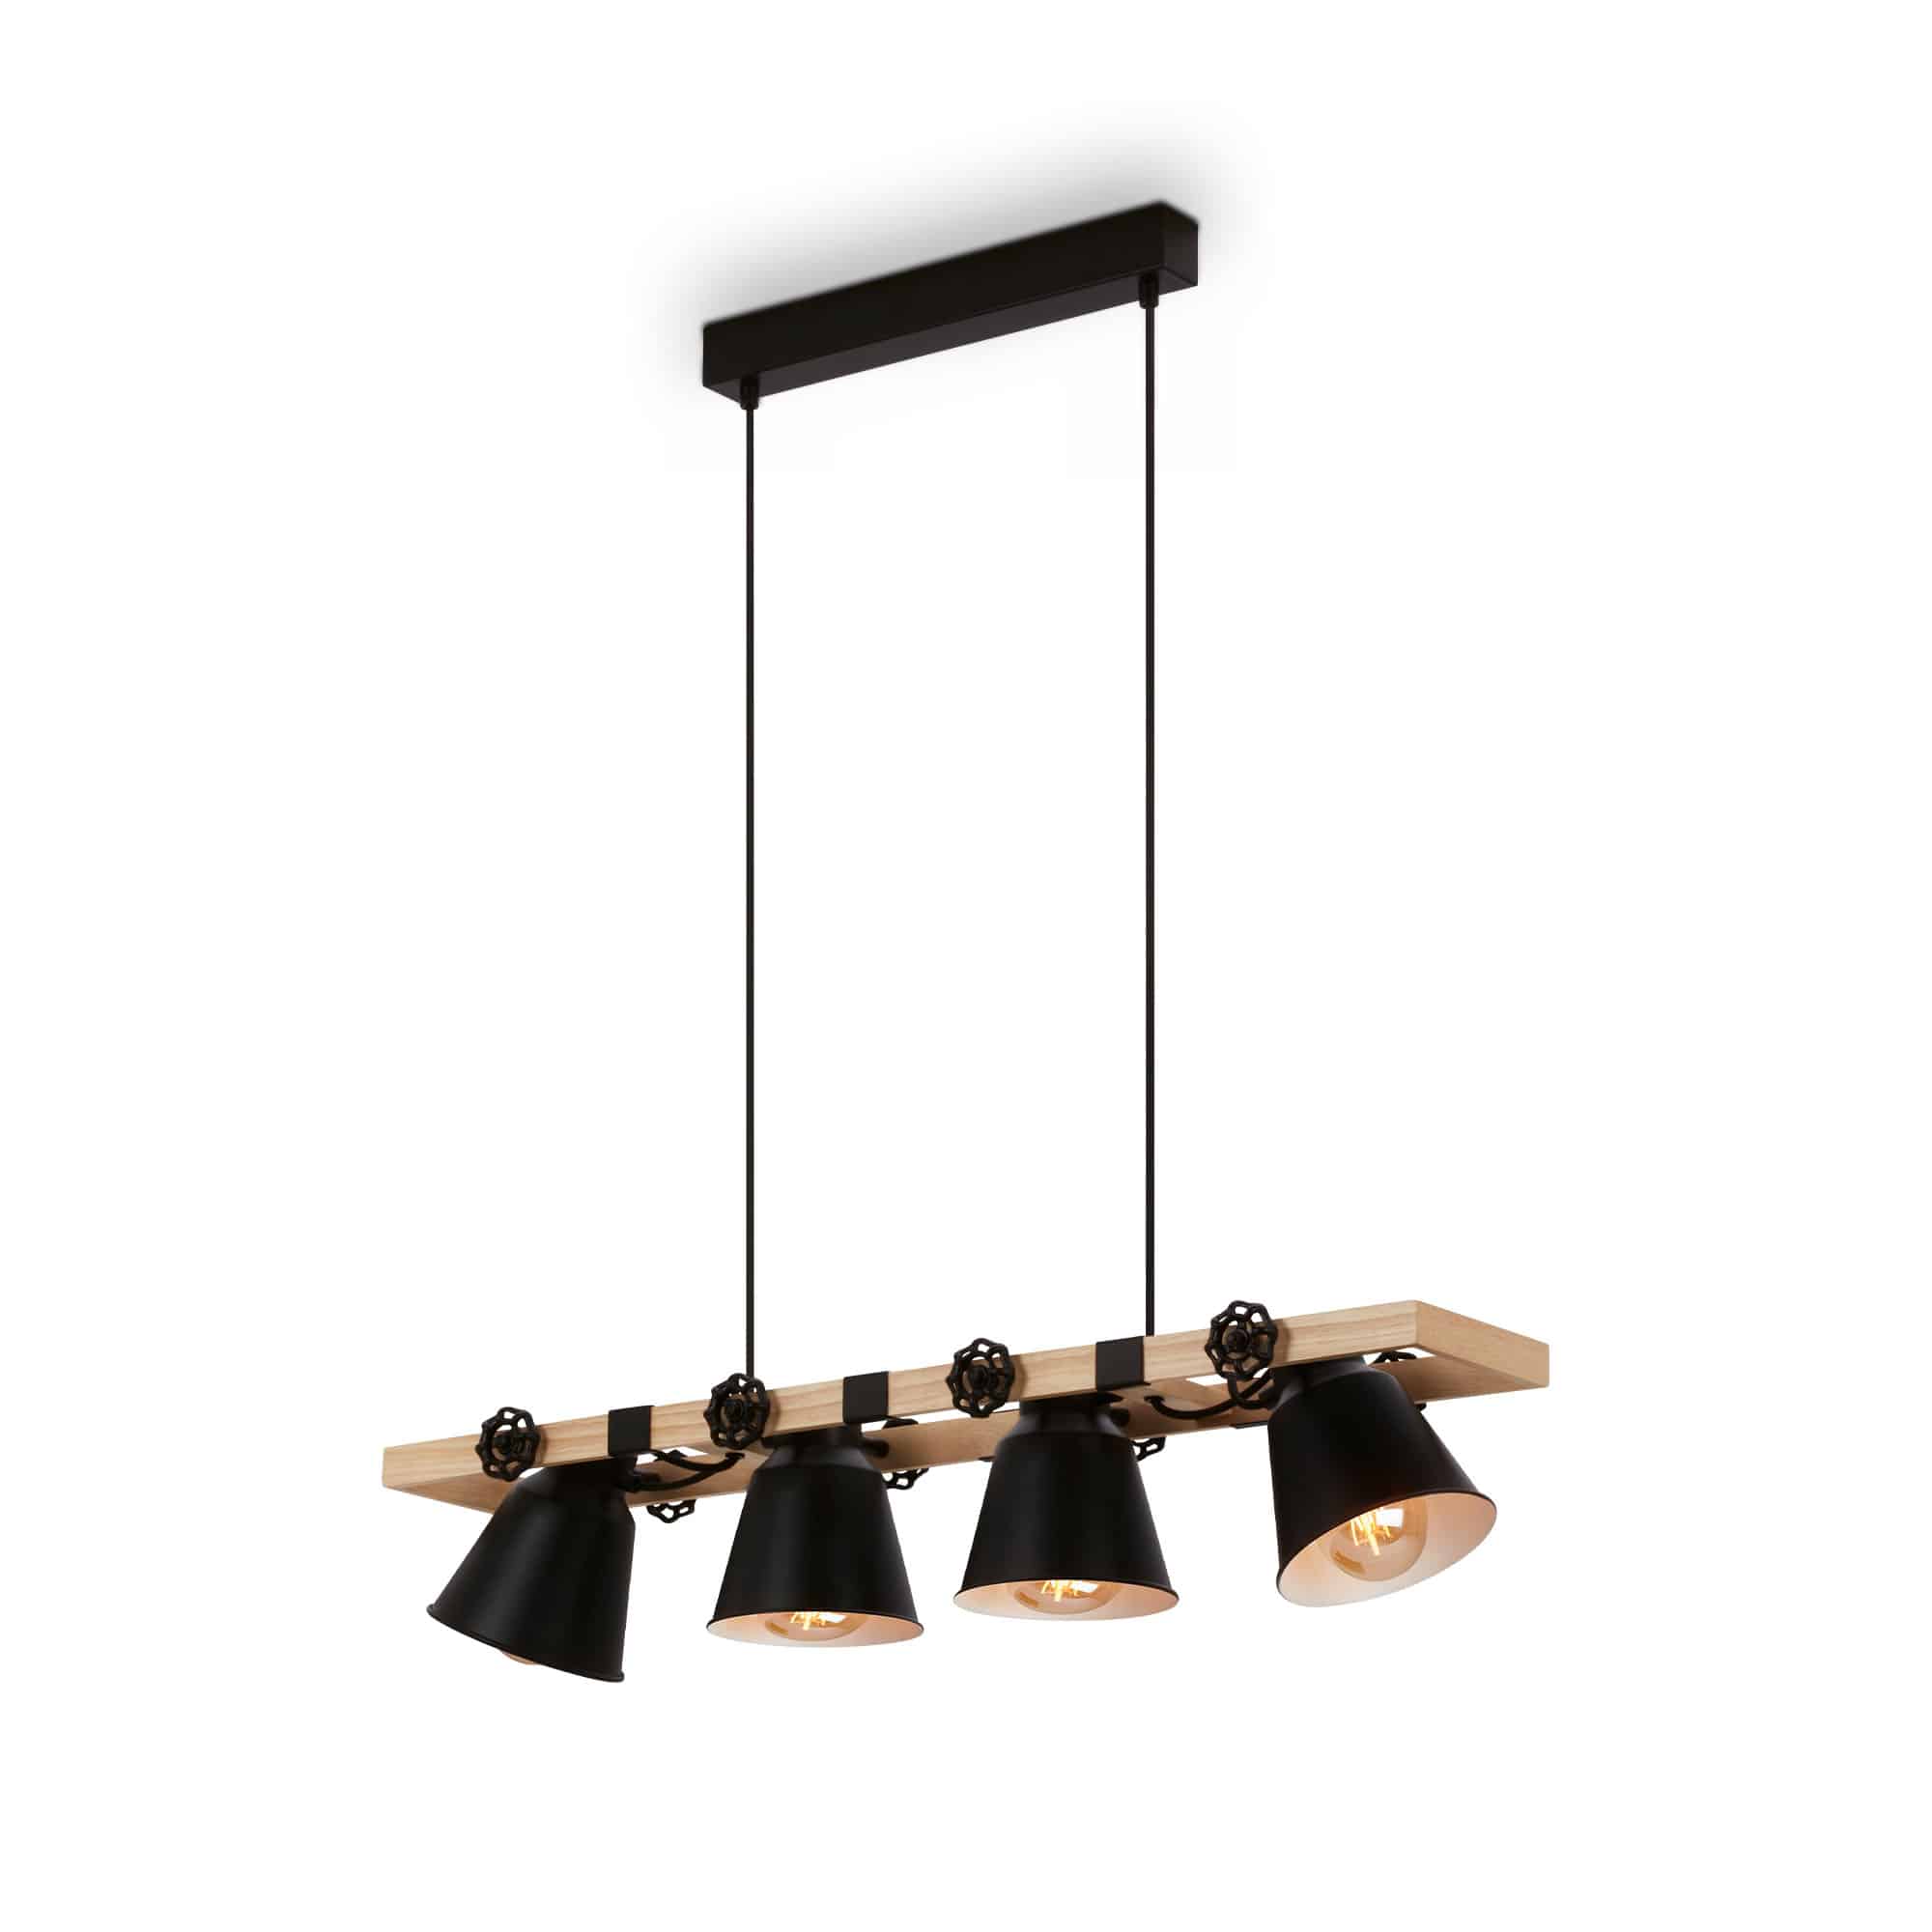 Wood & Style - Beleuchtungskonzept mit Lampen aus Holz | BRILONER